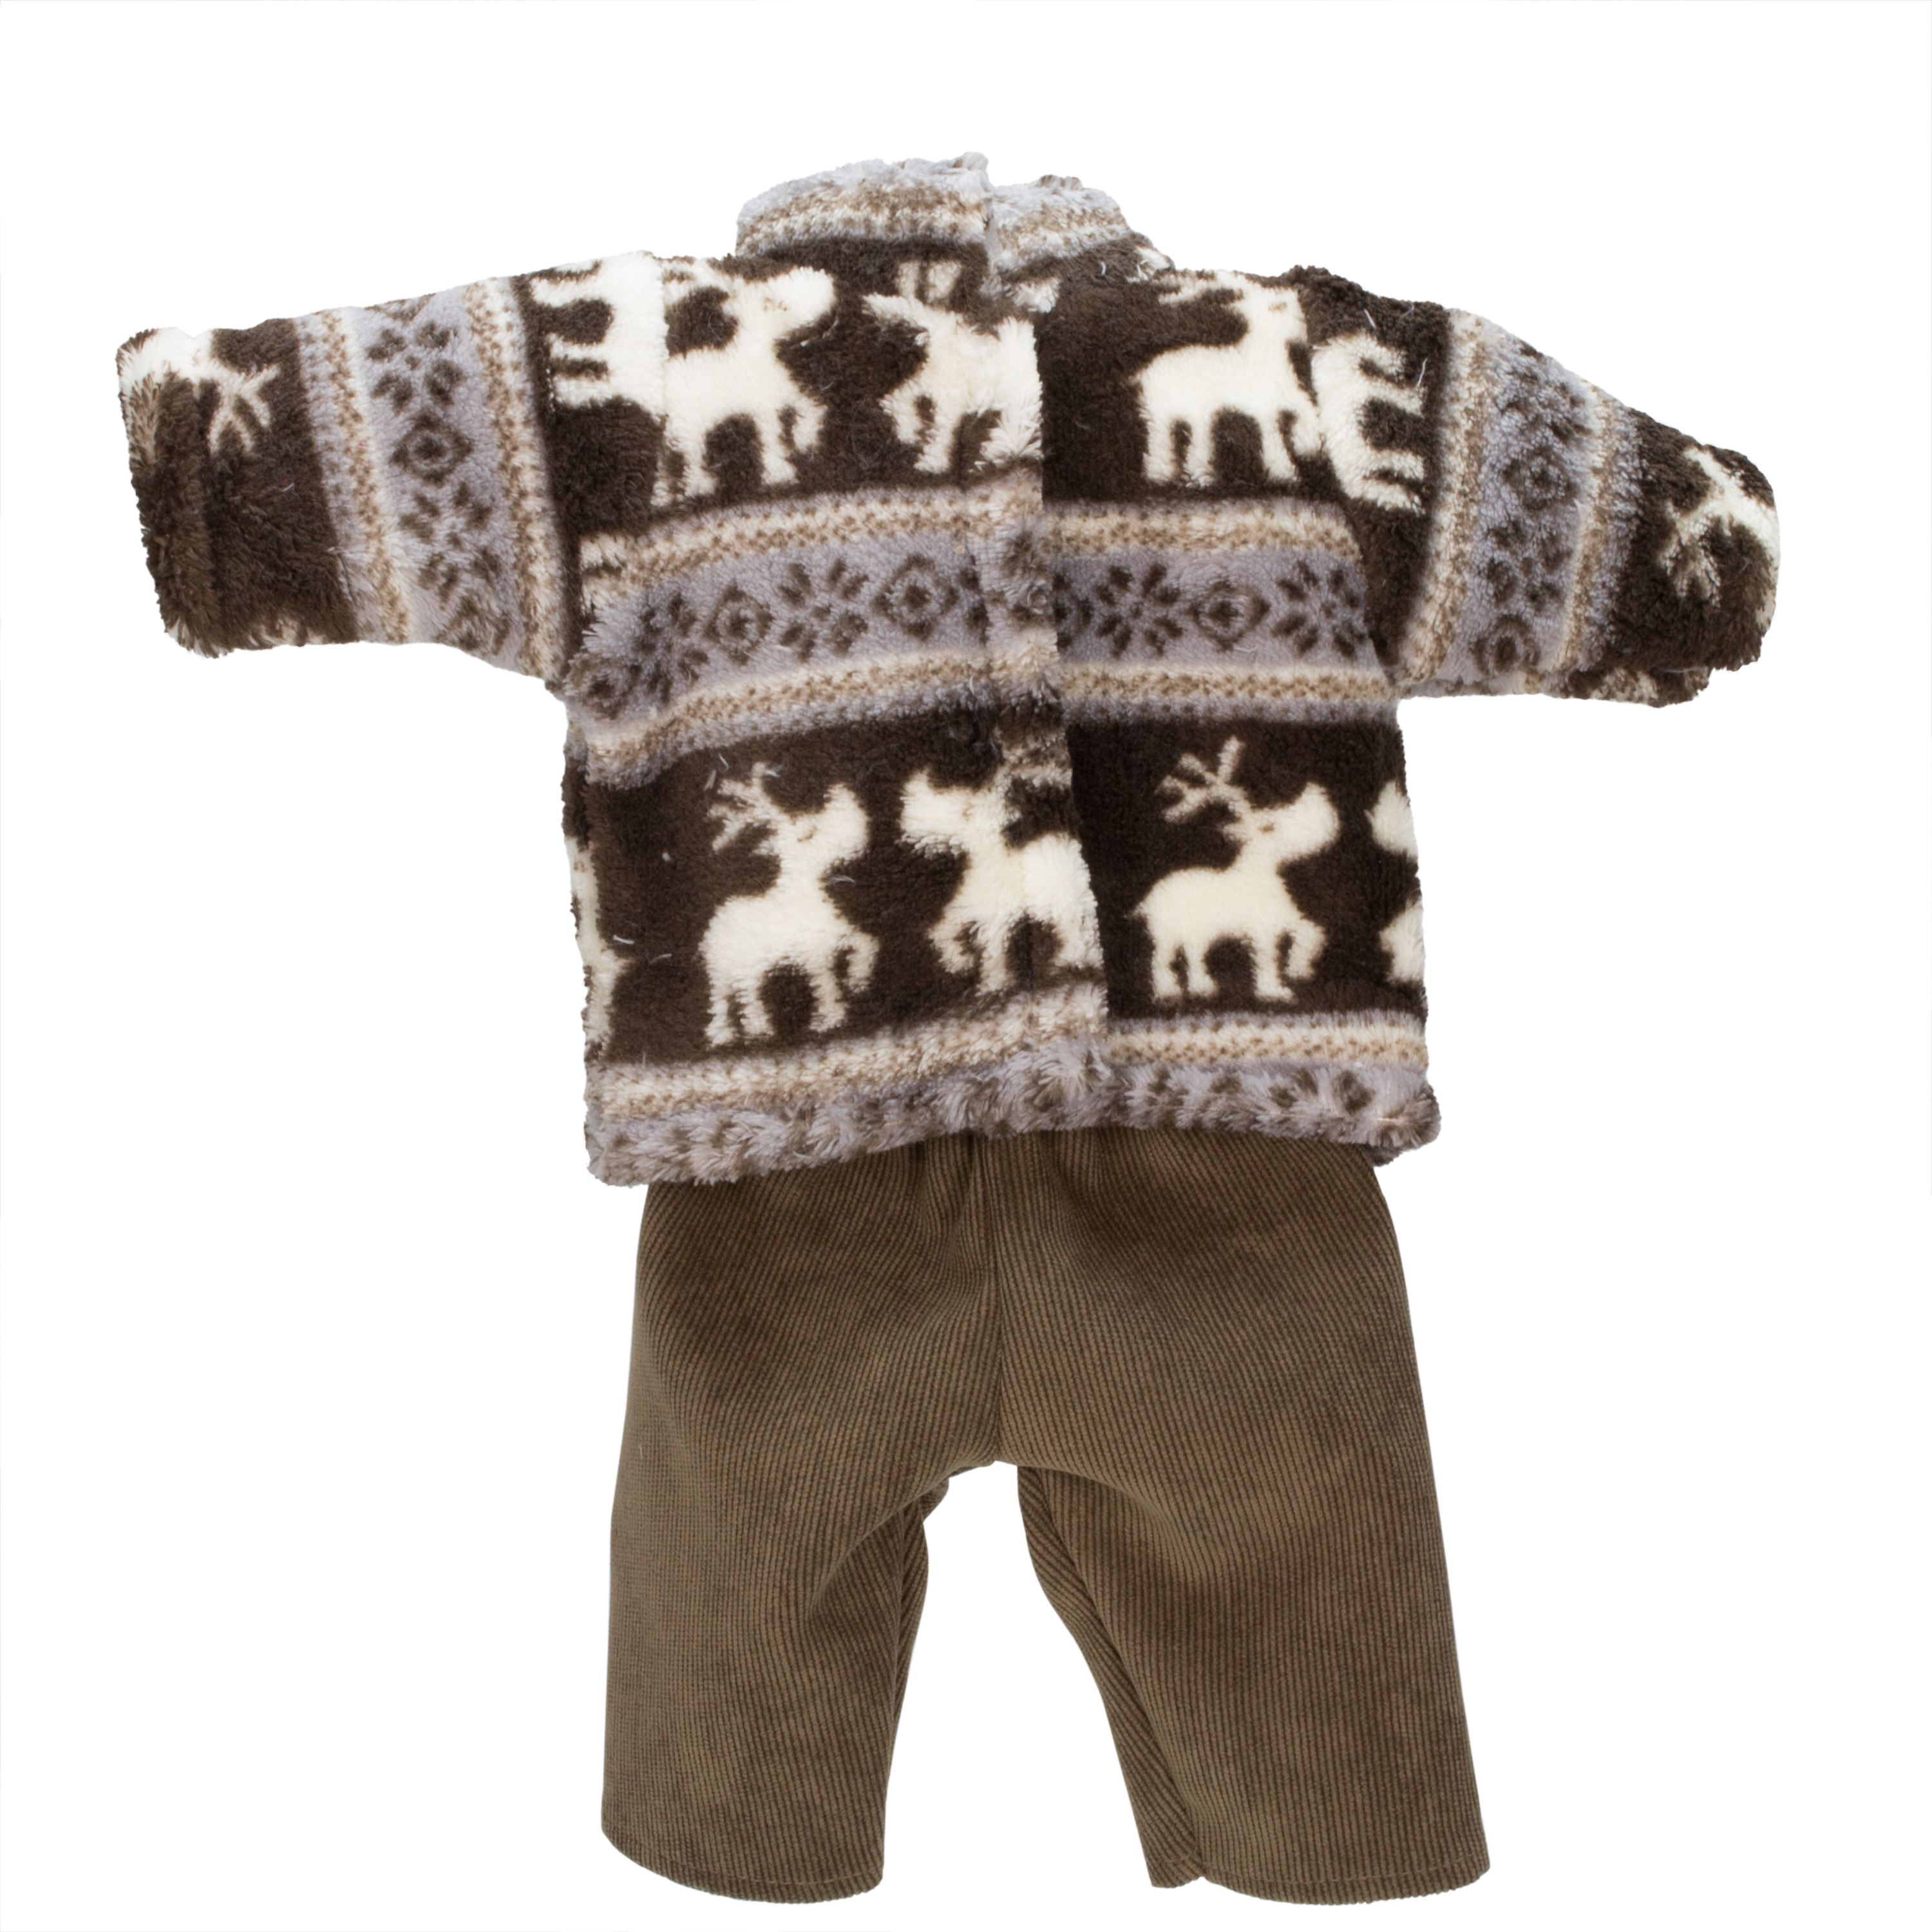 Winterkleidung für Jungen-Puppen, Gr. 28-32